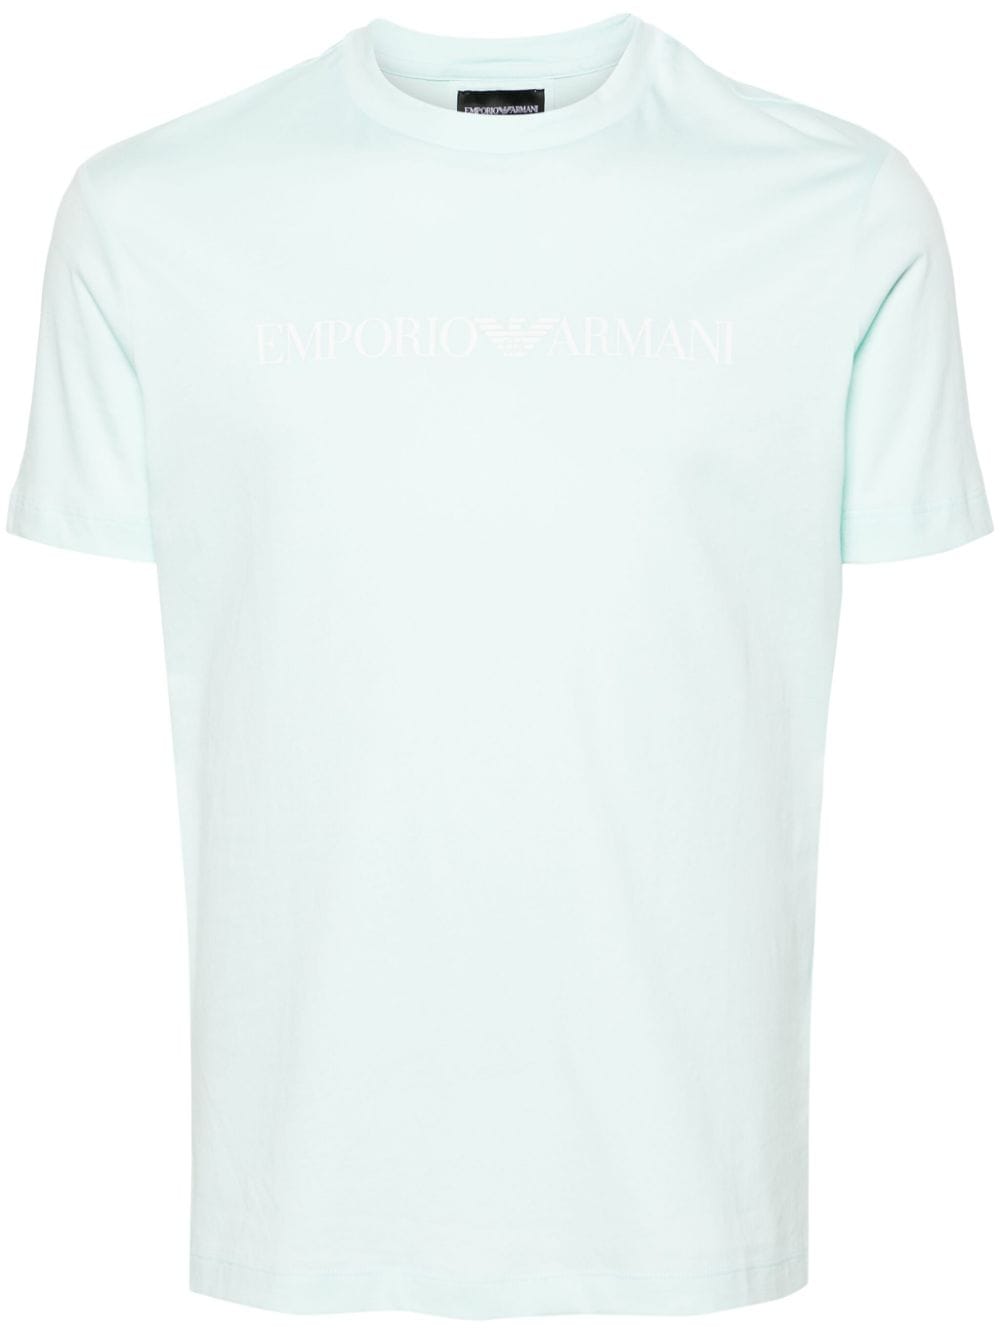 T-shirt azzurra logo Emporio